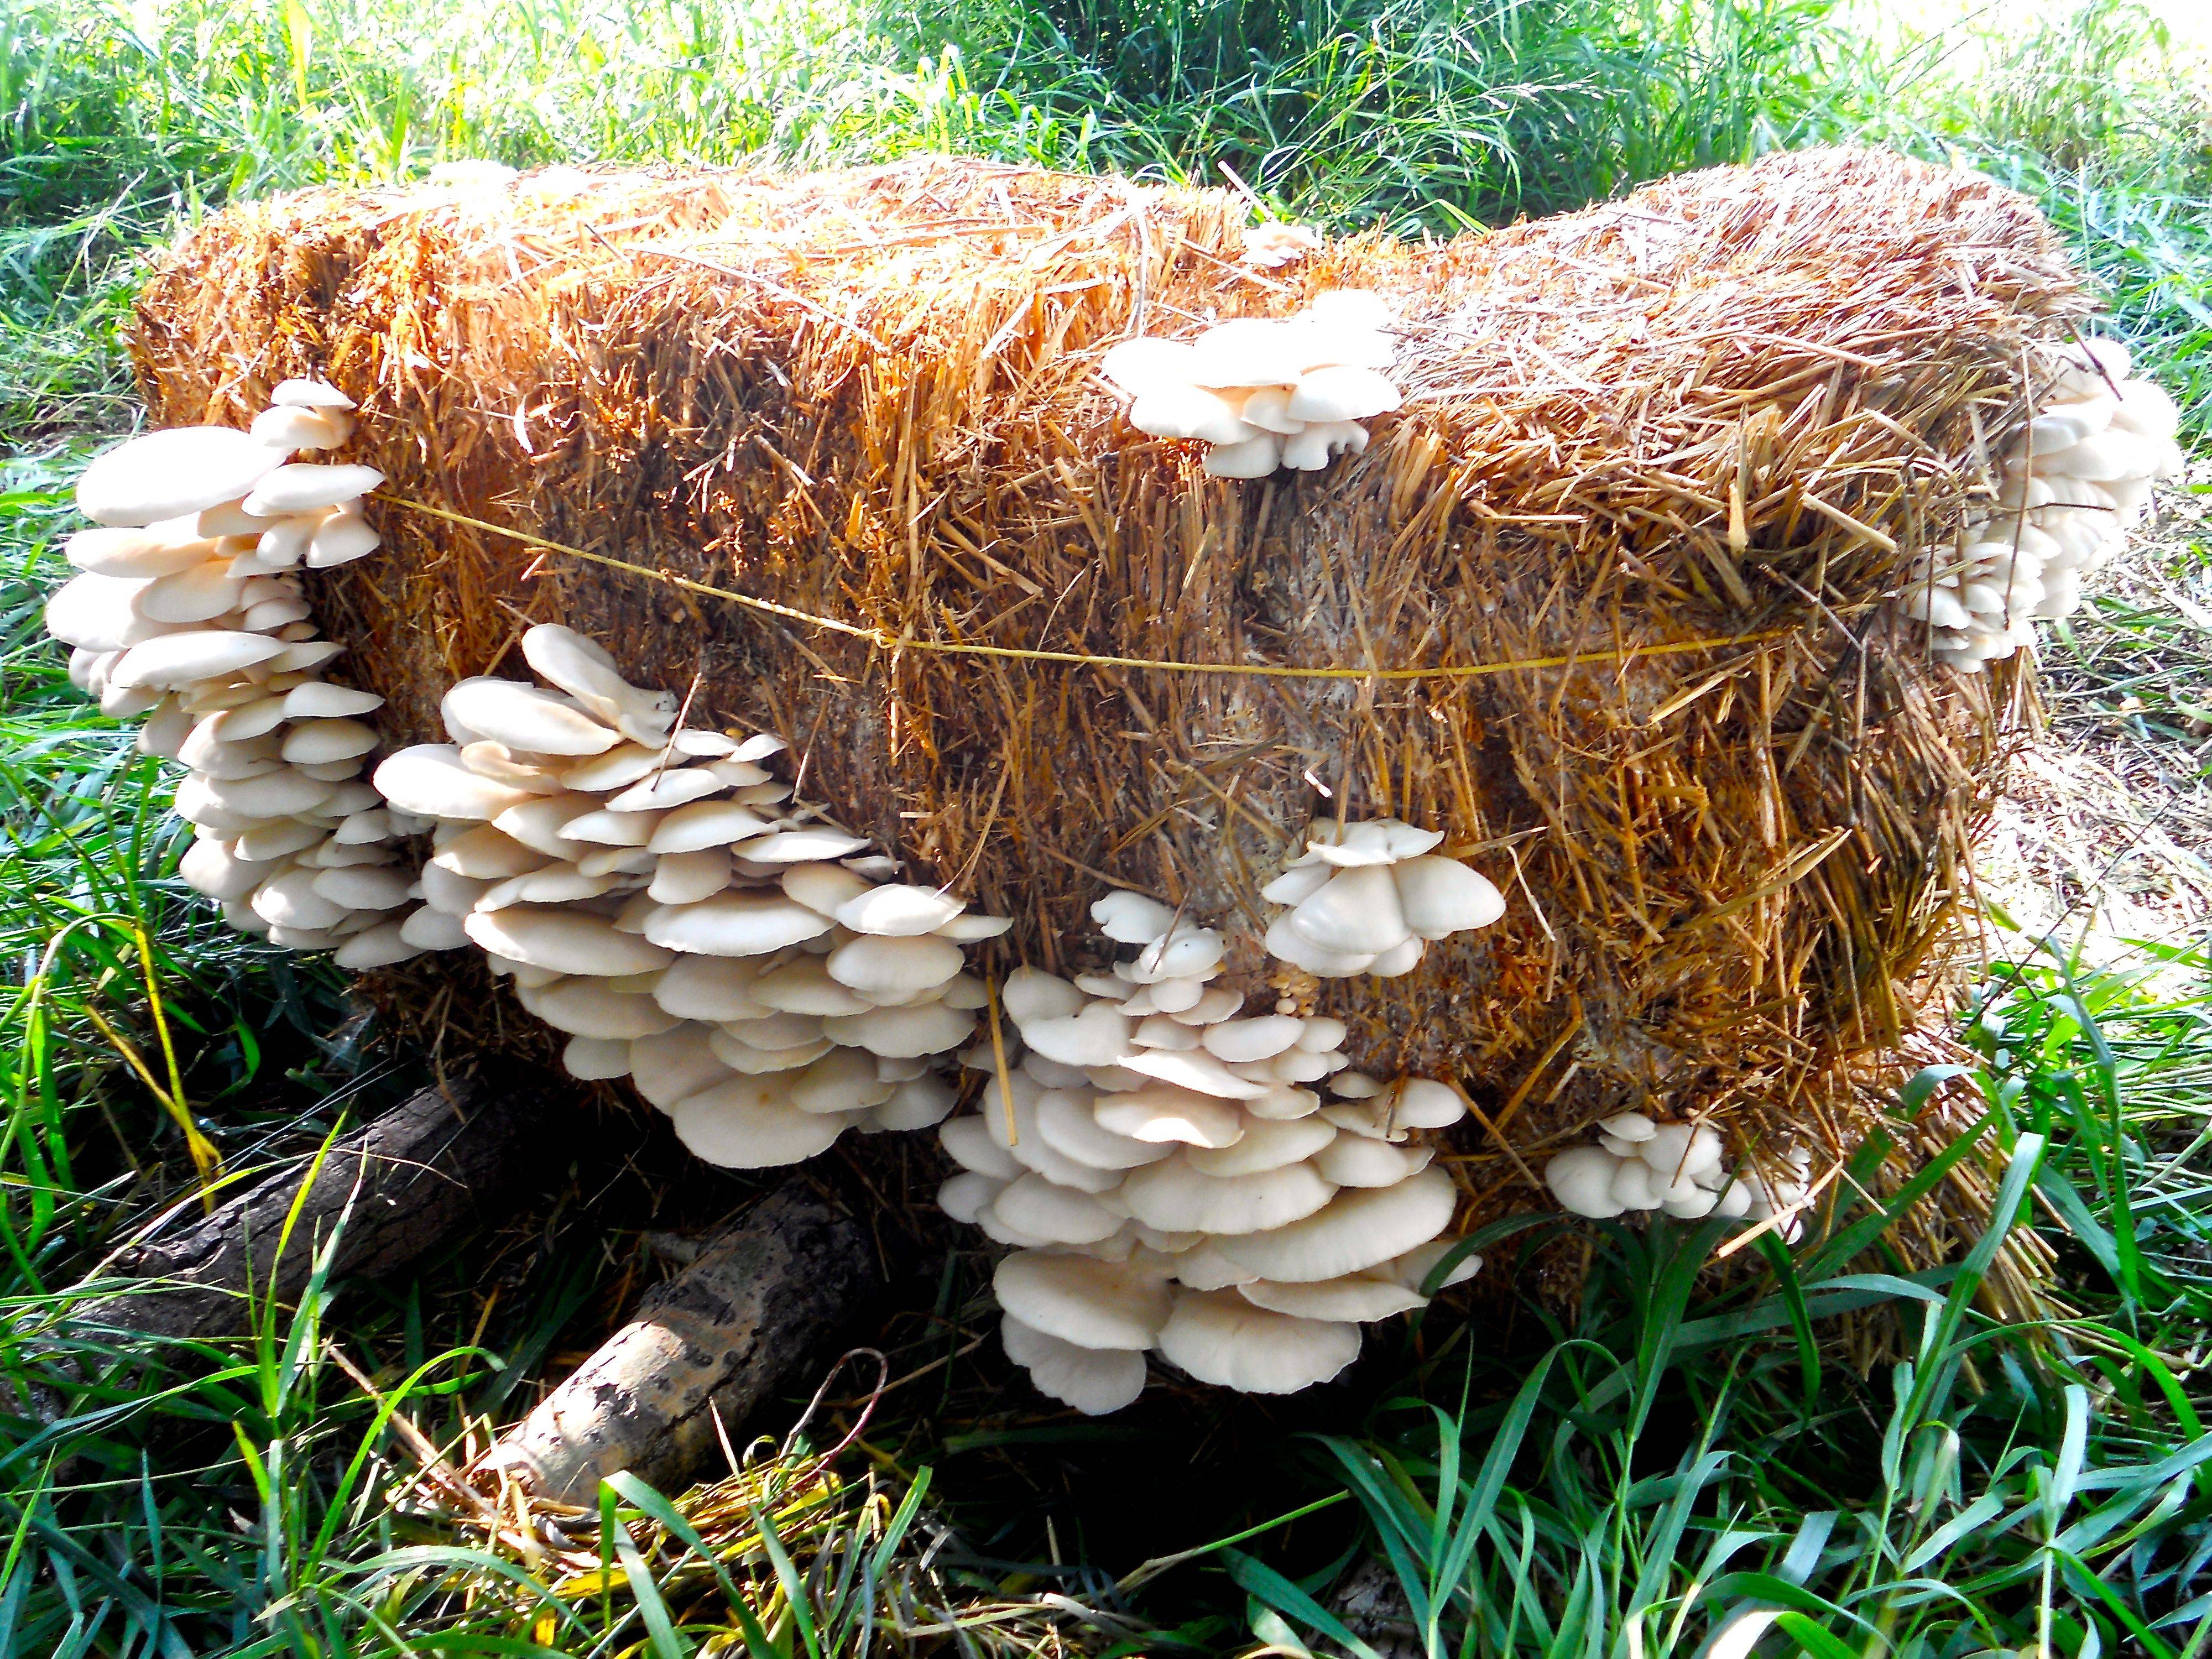 Шампиньоны на даче в открытом грунте: выращивание мицелия грибов в почве